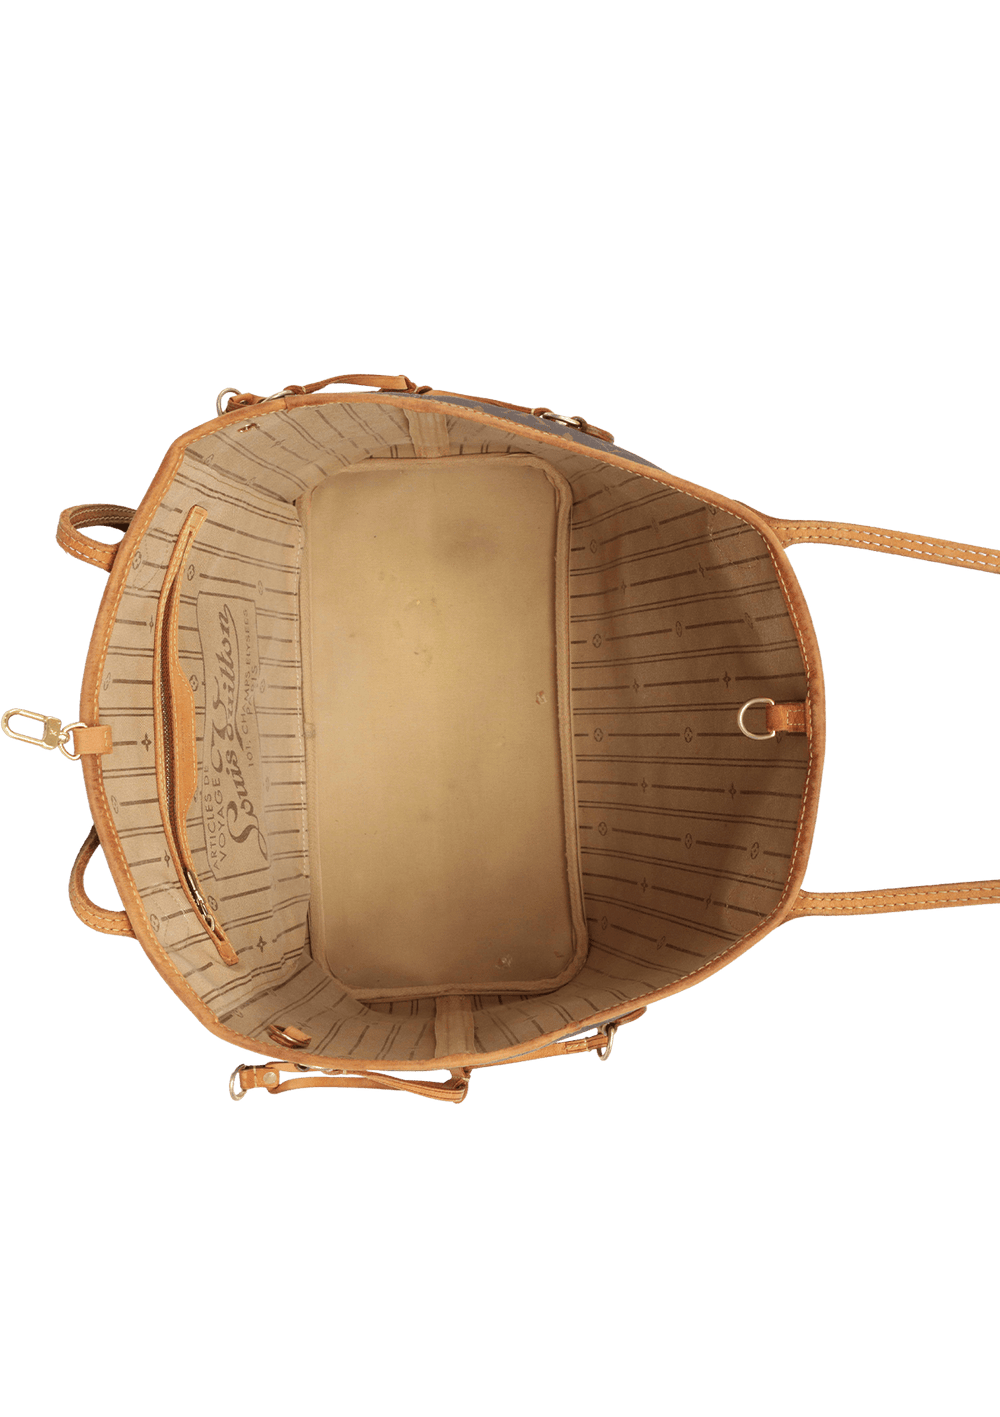 Bolsa sacola grande da Louis vuitton - Gold style Handbag